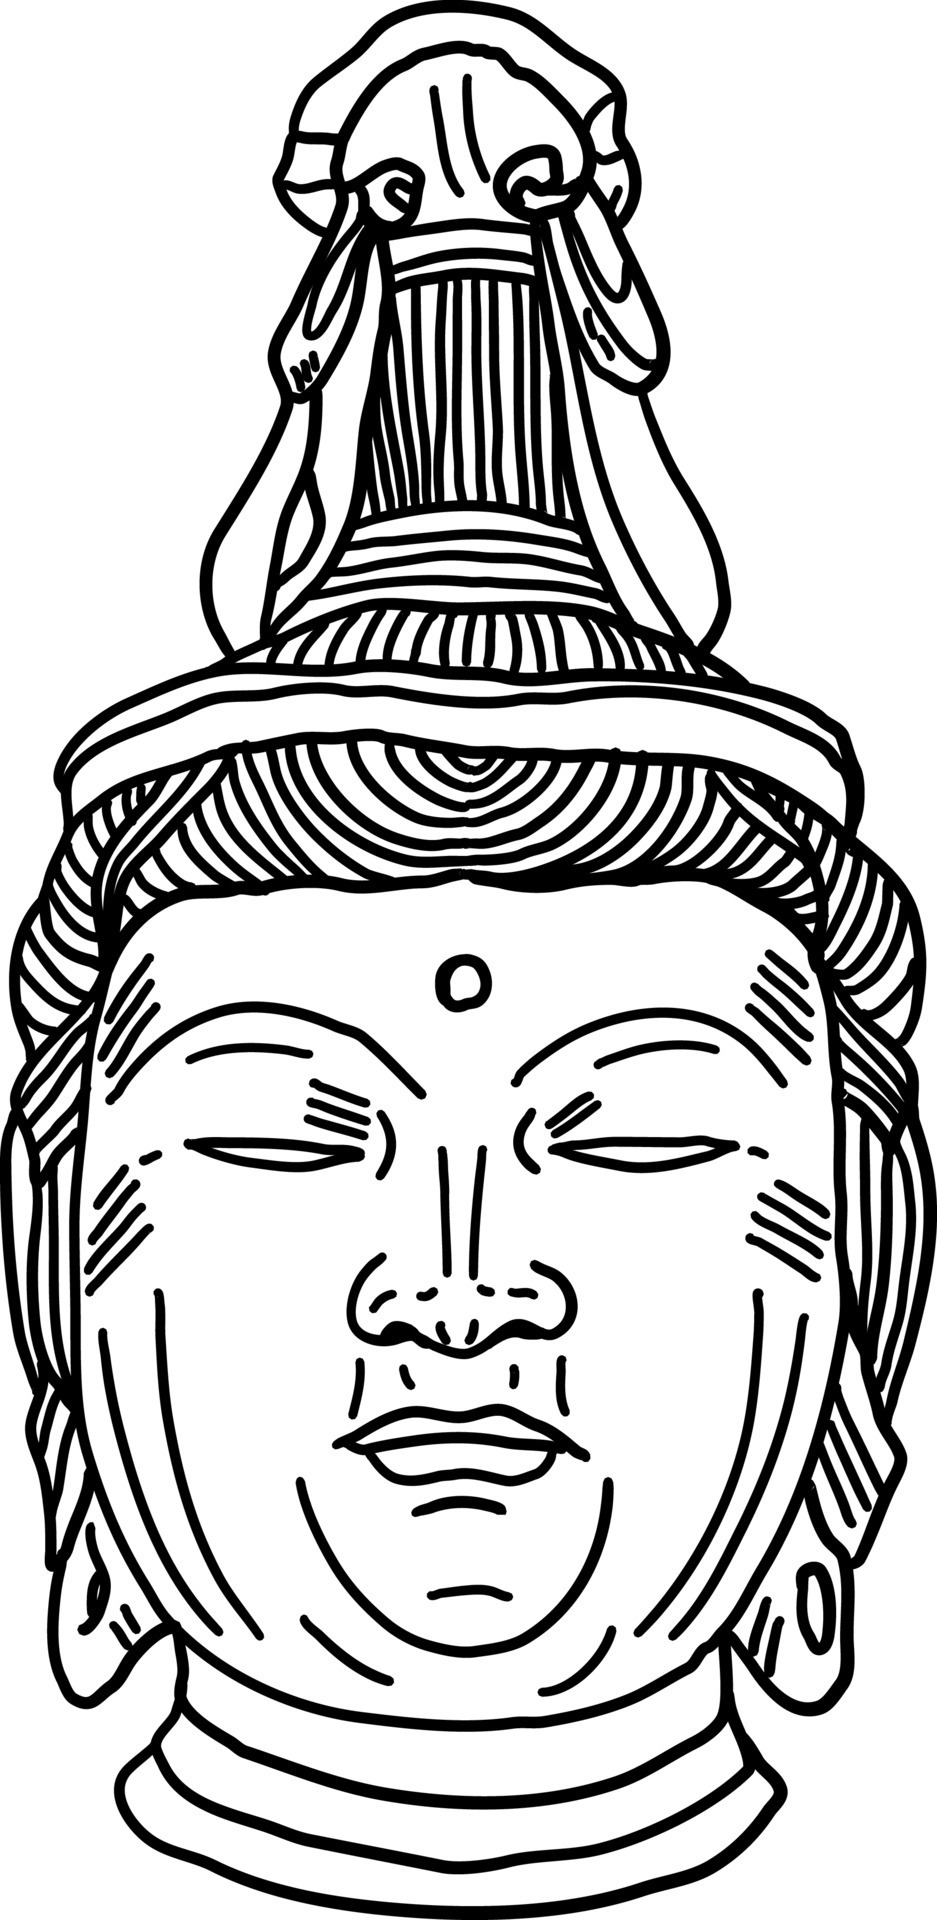 Gautam Buddha Art Drawing by Amit Verma | Saatchi Art-sonthuy.vn